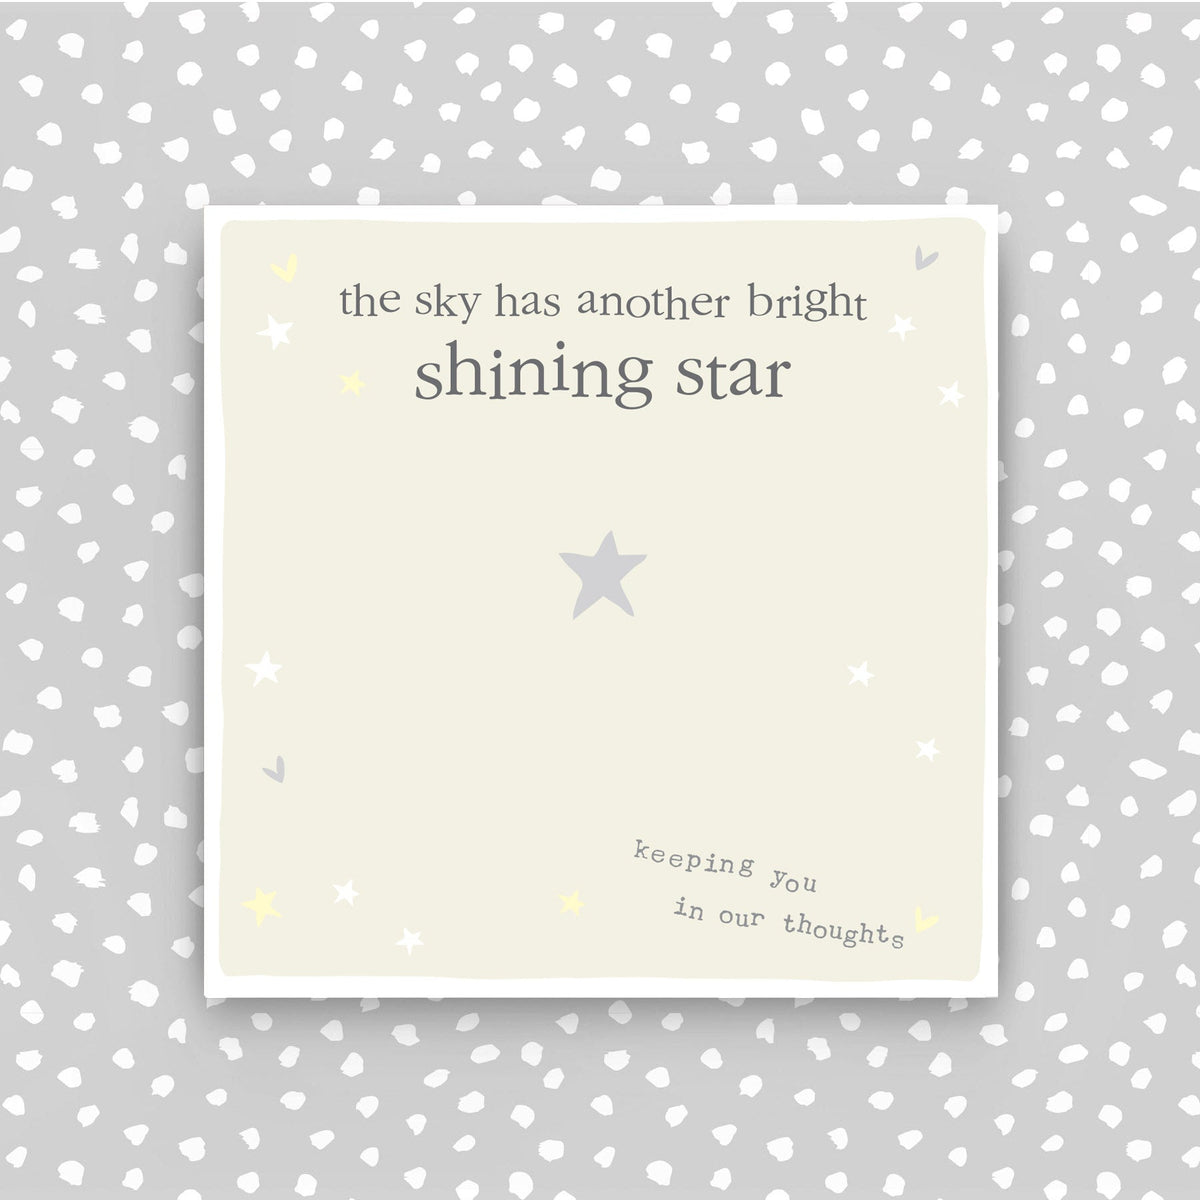 Sympathy - Shining star